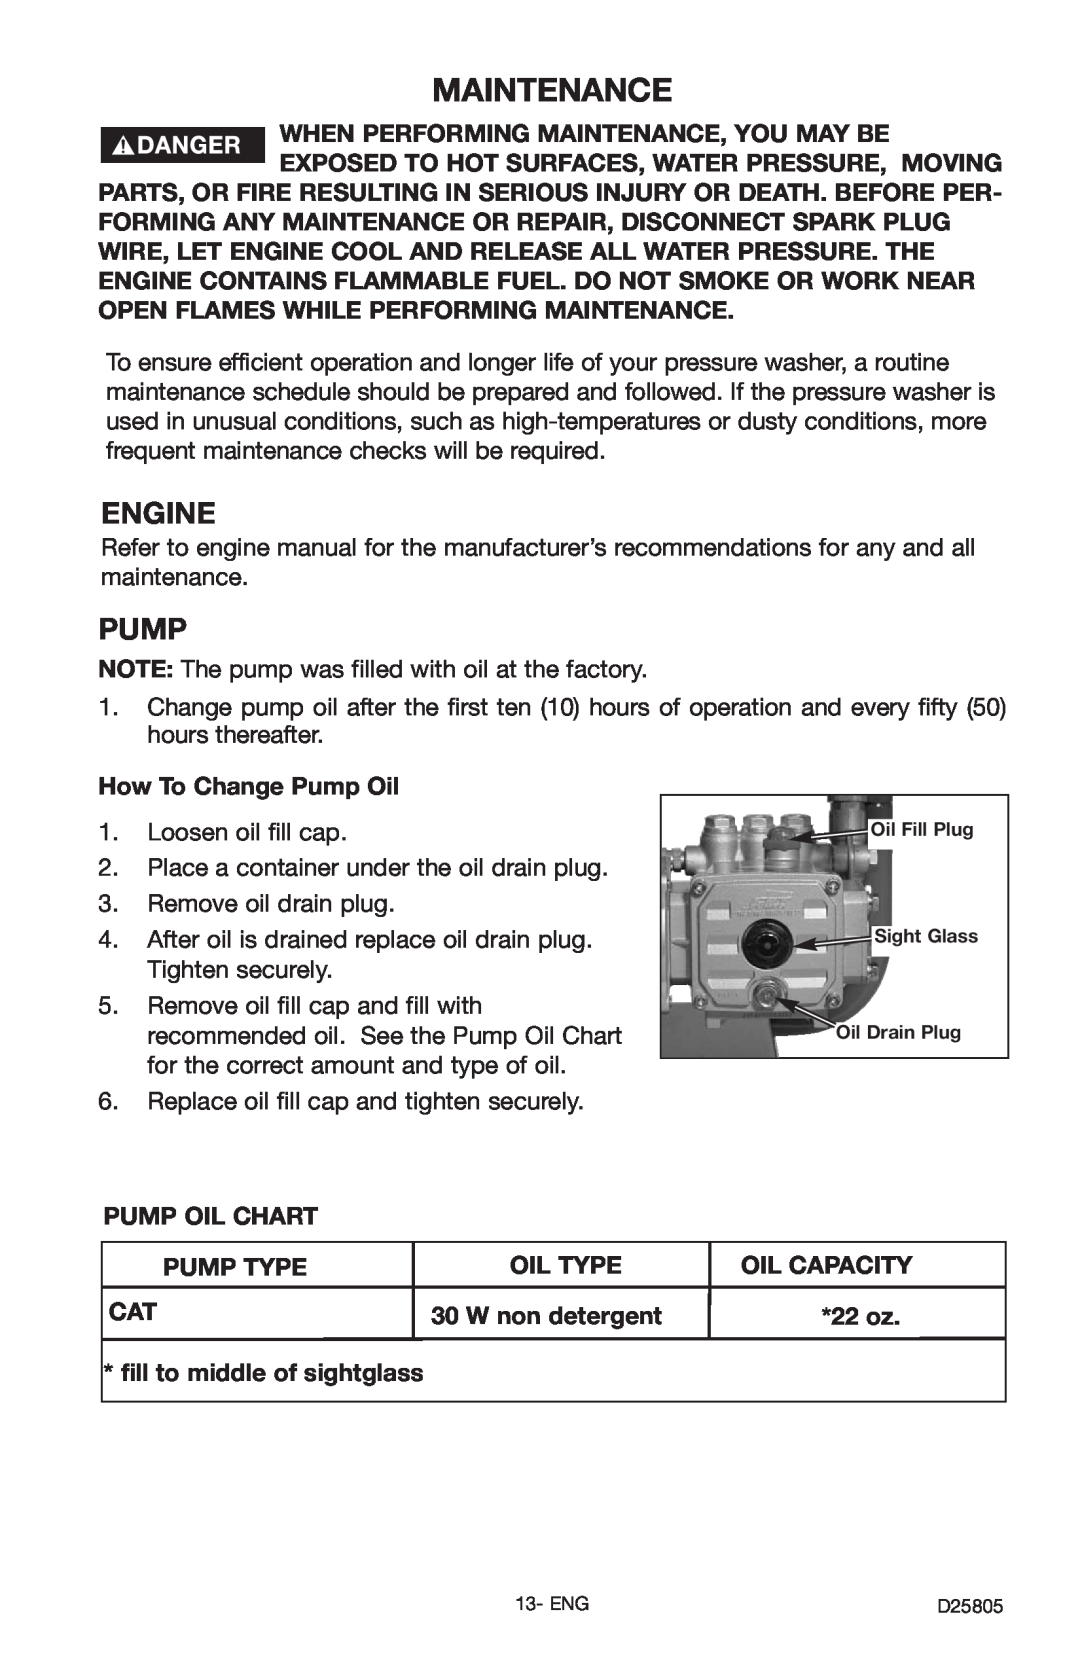 Porter-Cable PCH3500C, D25805-025-1 instruction manual Maintenance, Engine, Pump 